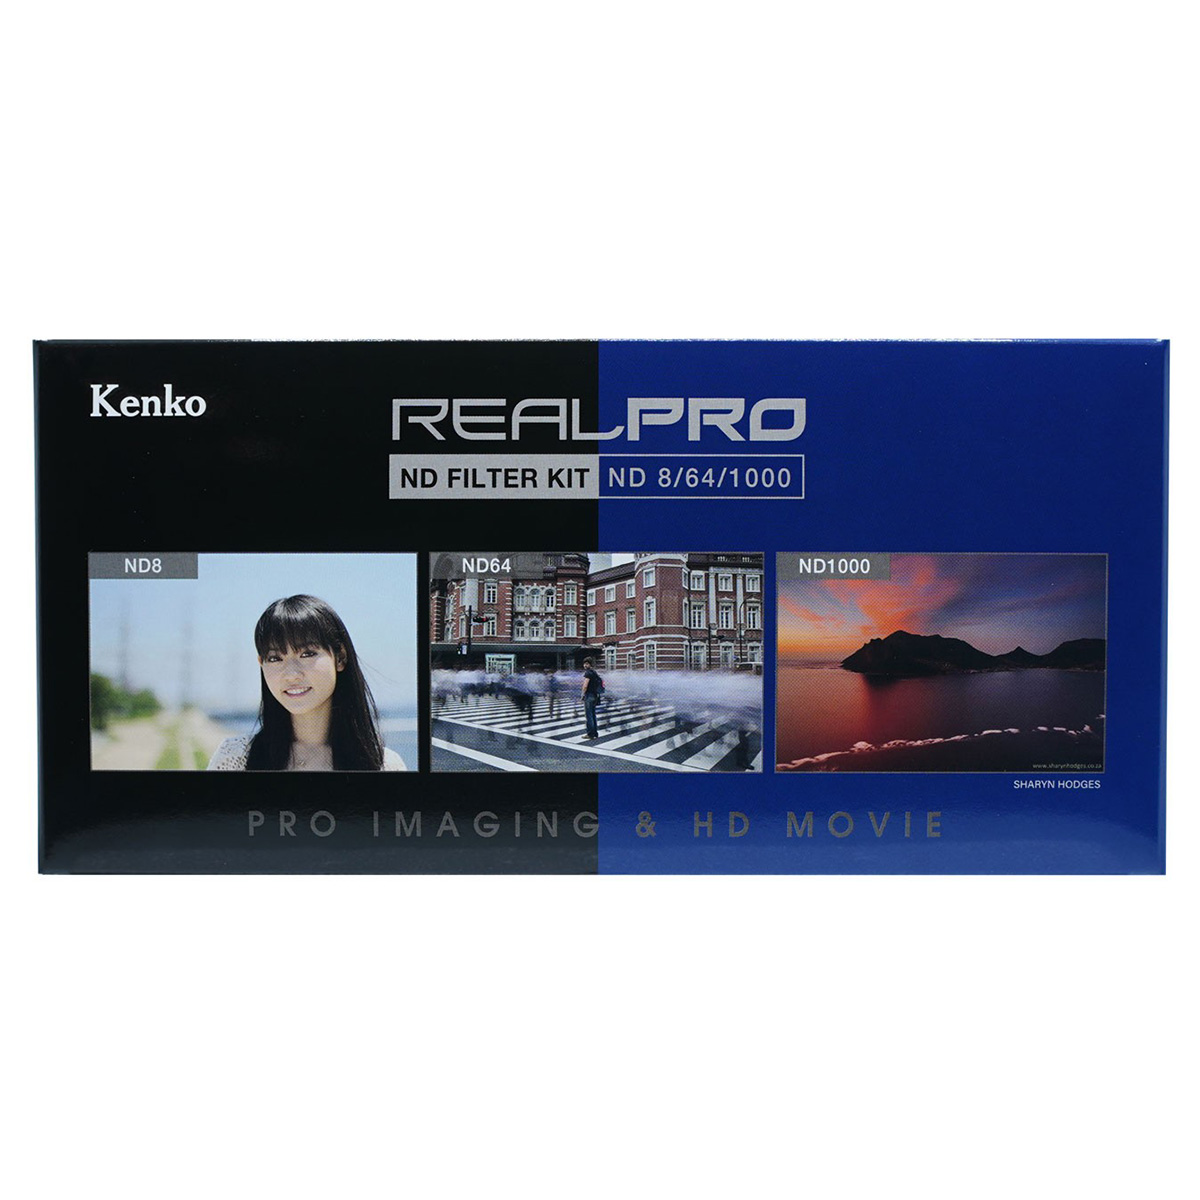 REALPRO ND FILTER KIT - Kenko Filters